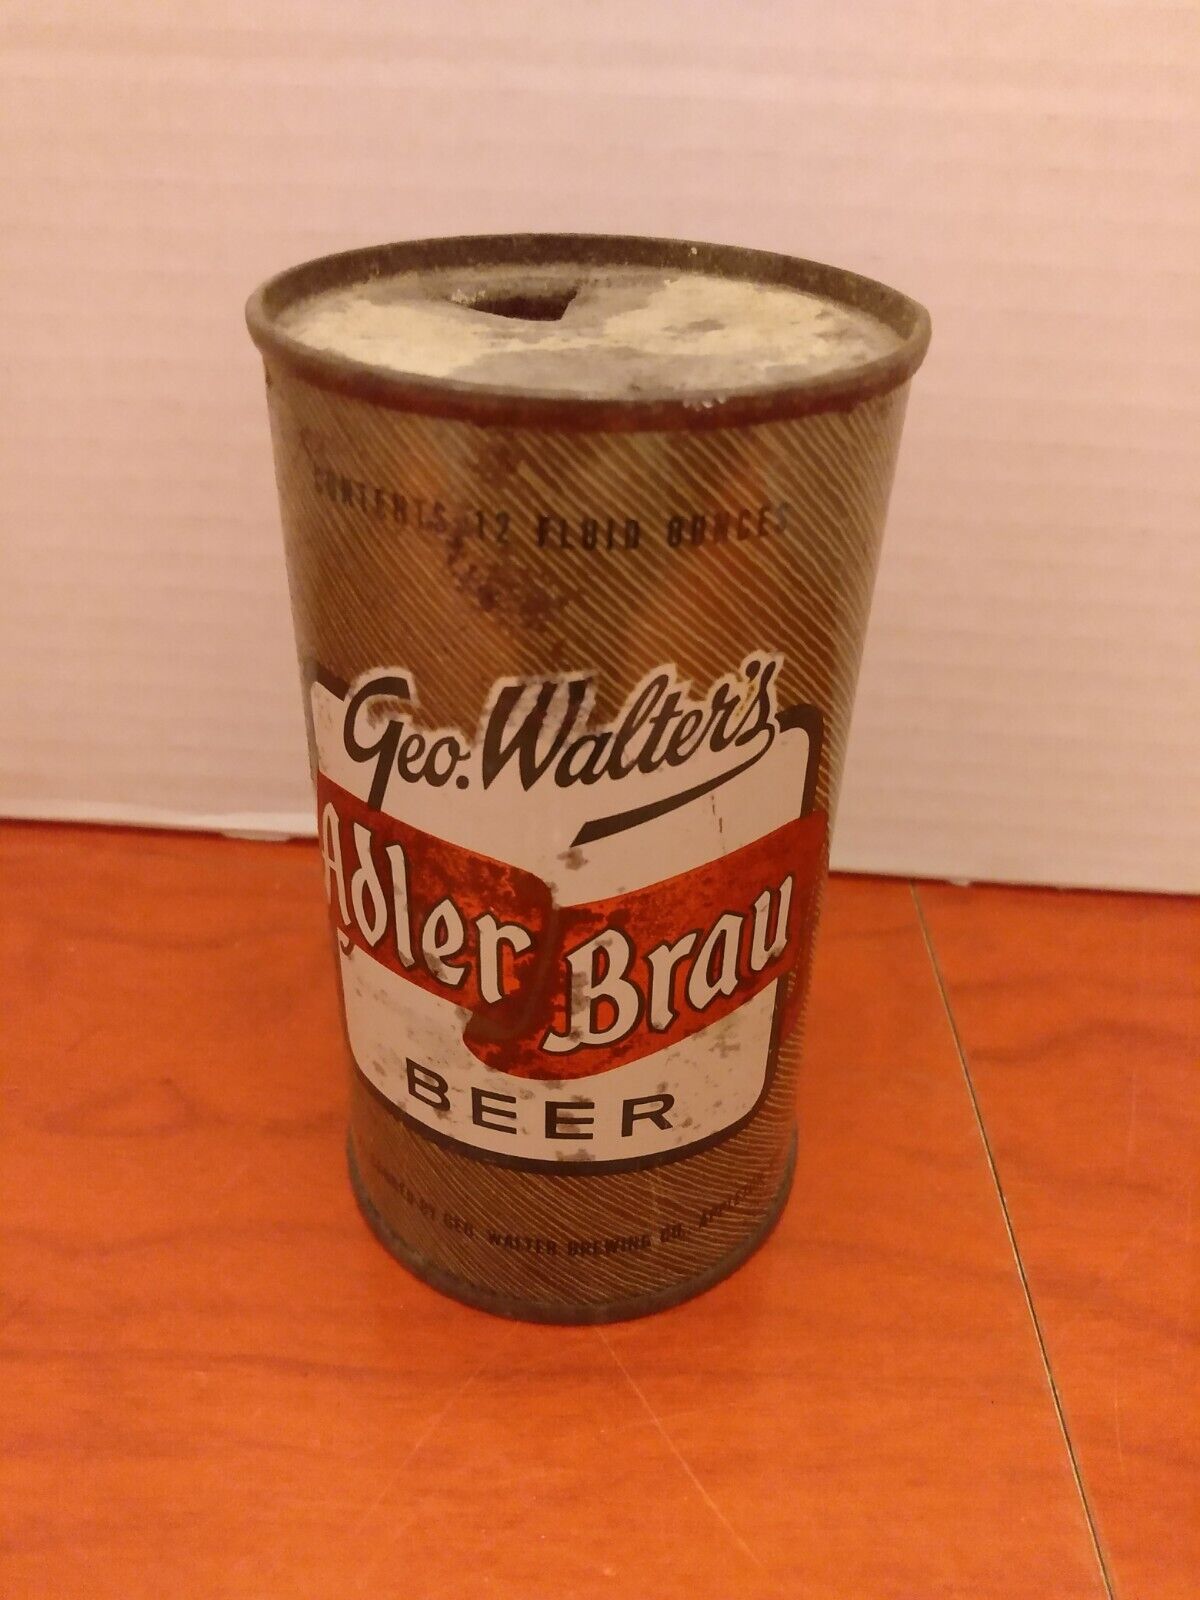 12oz  Geo. Walters Adler brau beer flat top beer can nice solid can 